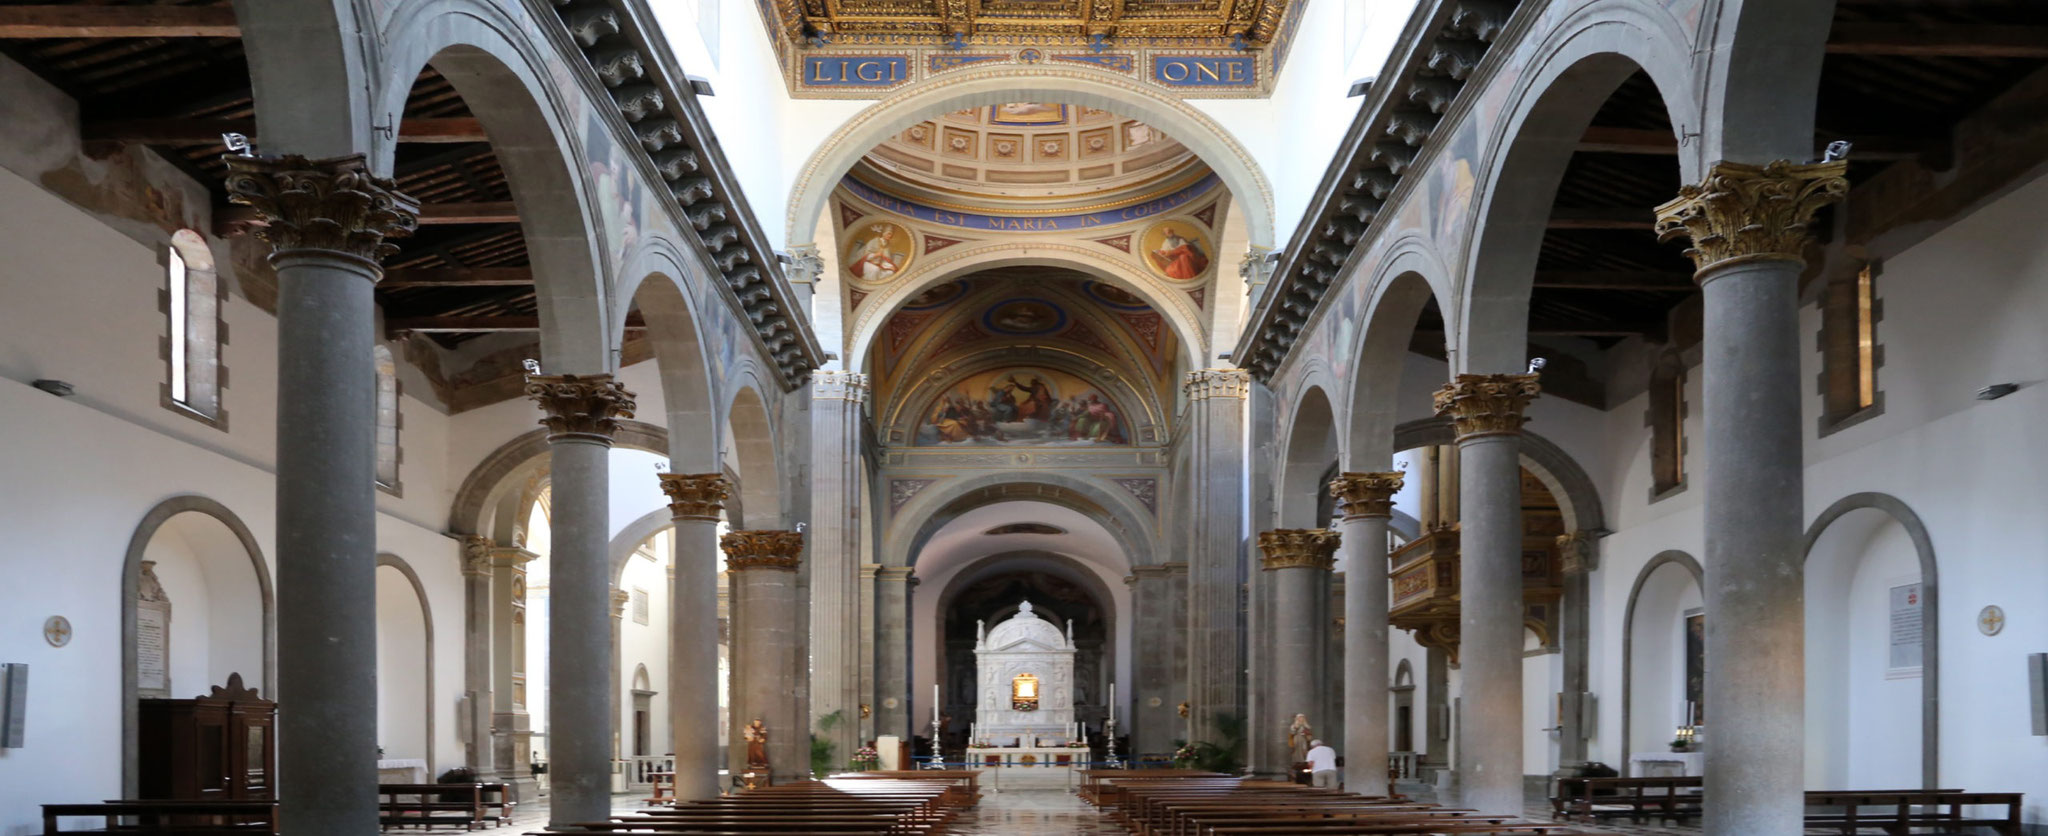 Chiesa Santa Maria della Quercia (interno) - 2 km - 5 minuti (in auto, 25 a piedi)